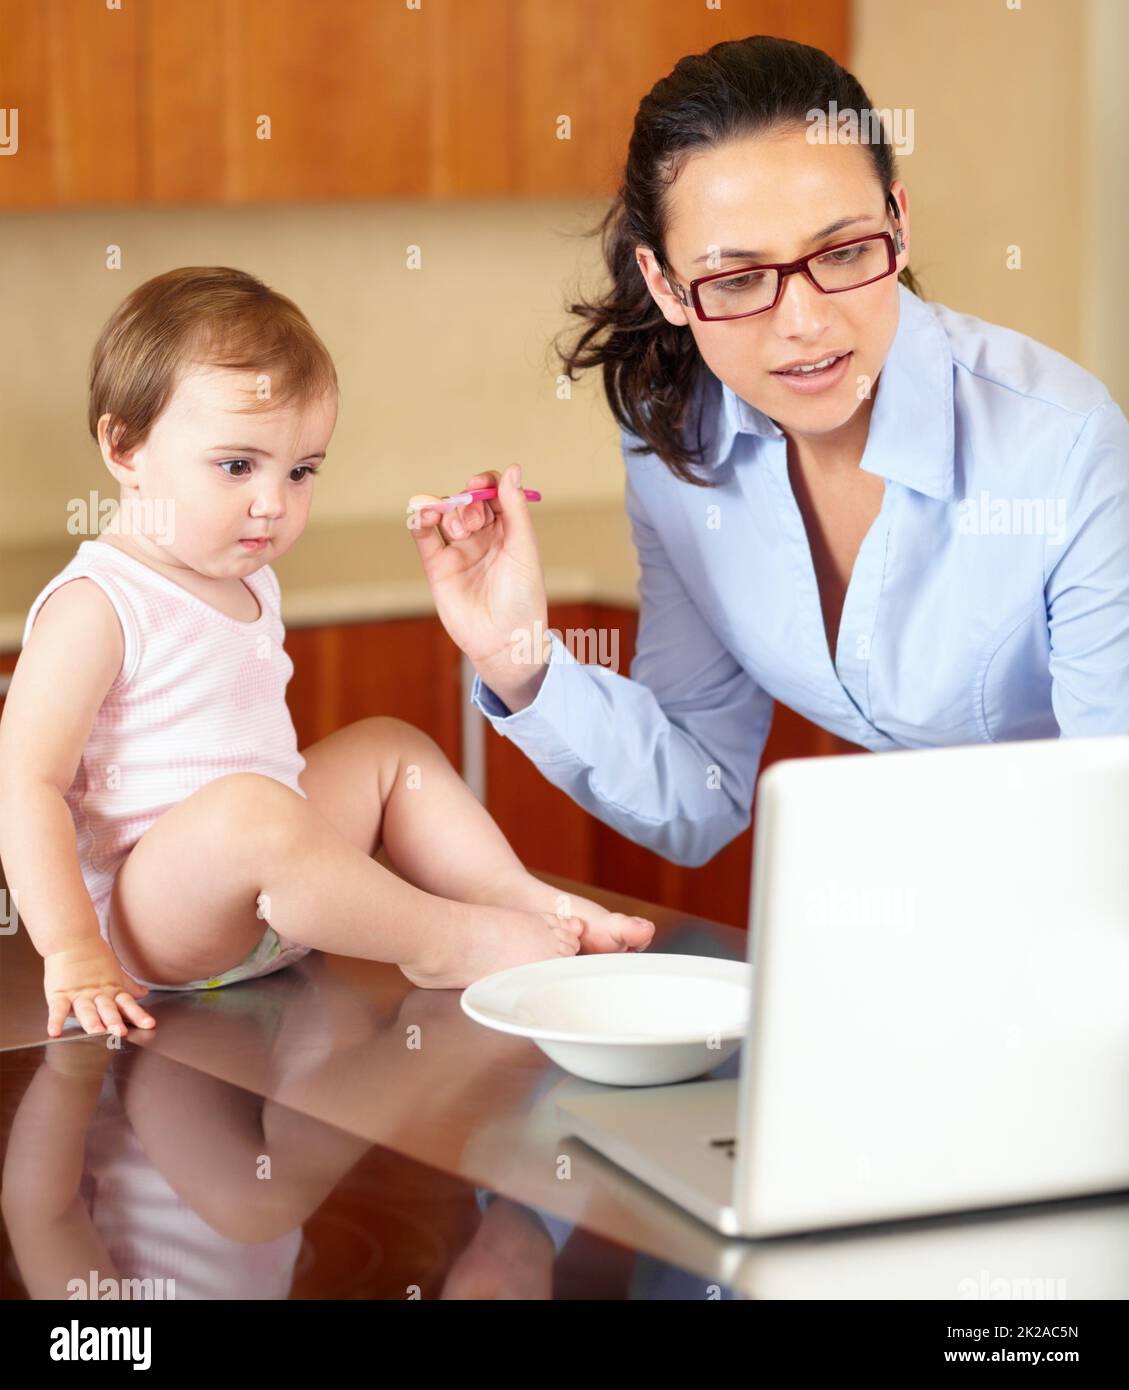 Eine zusätzliche Hand wäre nützlich. Aufnahme einer alleinerziehenden Mutter, die ihr Baby füttert, während sie versucht, an ihrem Laptop zu arbeiten. Stockfoto